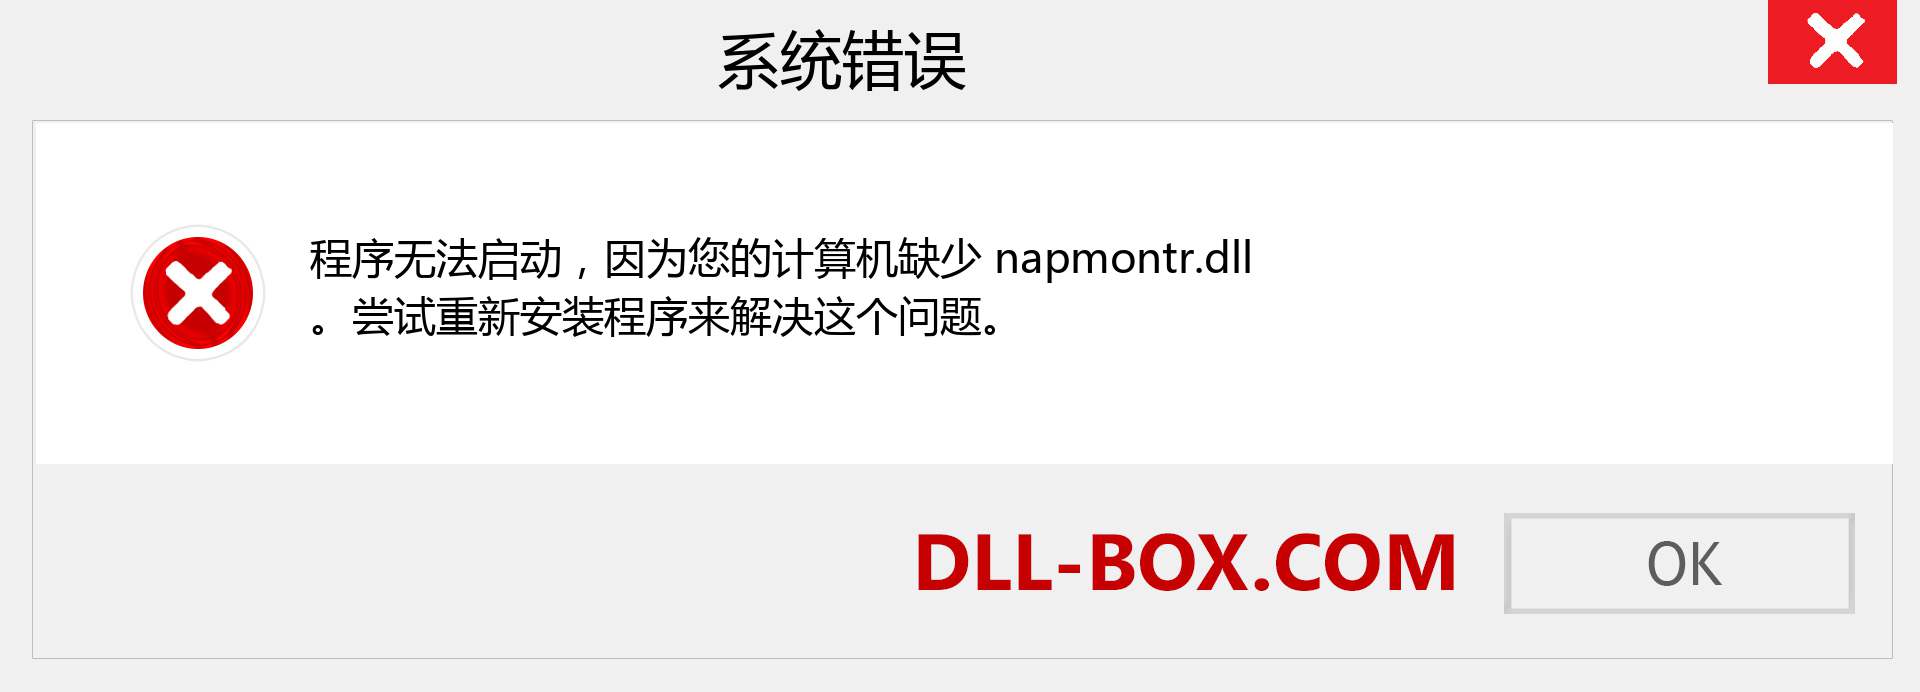 napmontr.dll 文件丢失？。 适用于 Windows 7、8、10 的下载 - 修复 Windows、照片、图像上的 napmontr dll 丢失错误